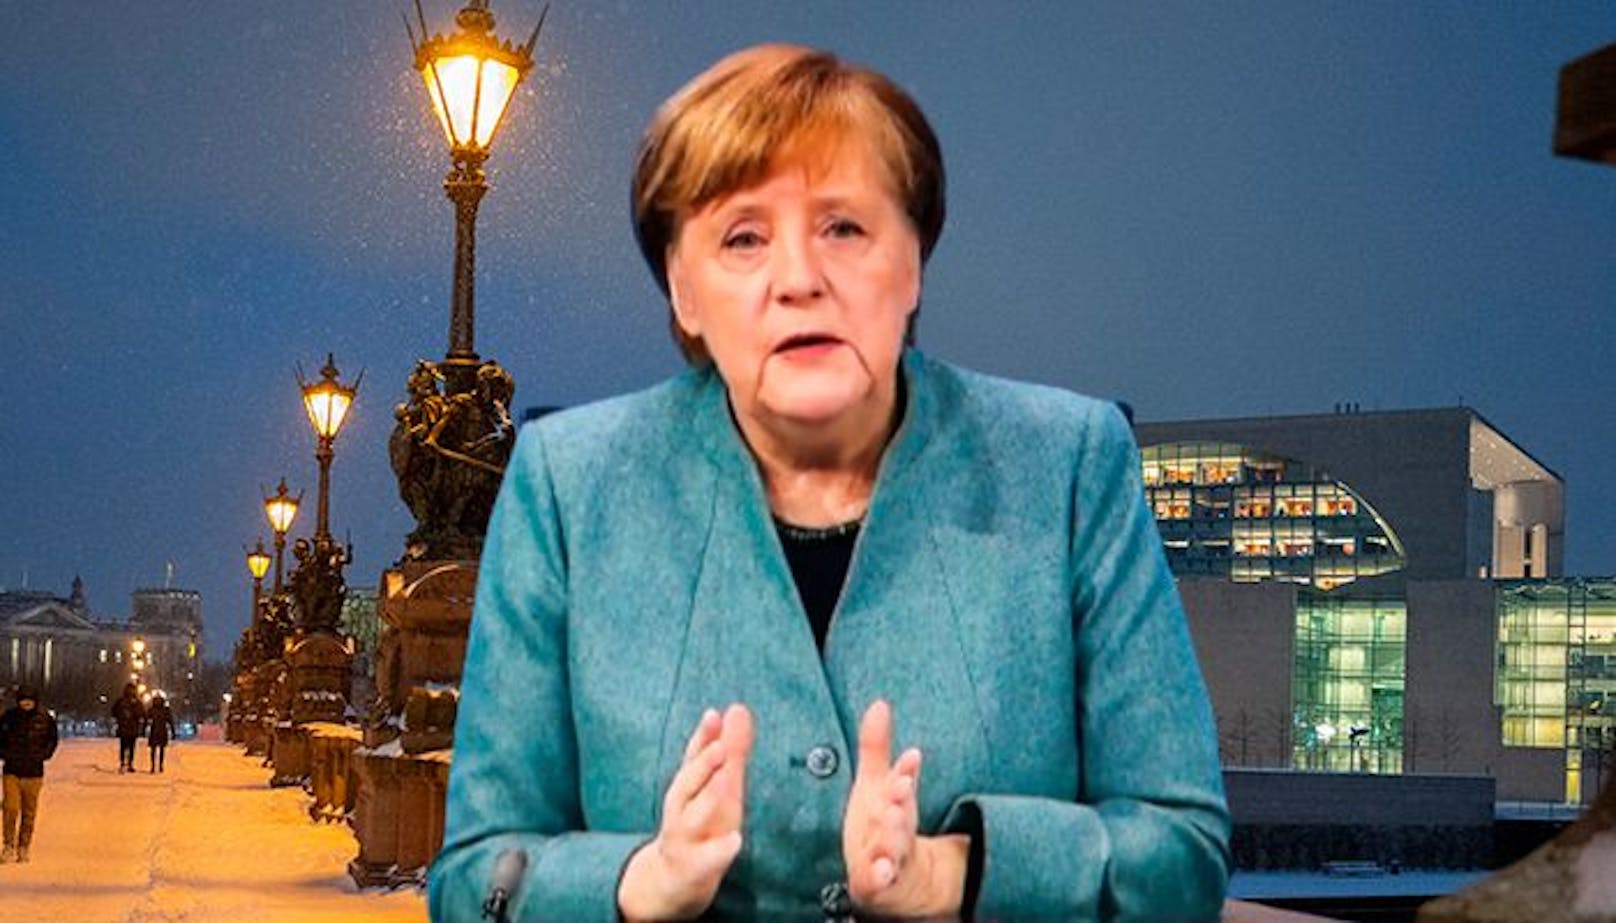 Am Mittwoch um 14 Uhr steigt der Corona-Gipfel bei Merkel im Kanzleramt.